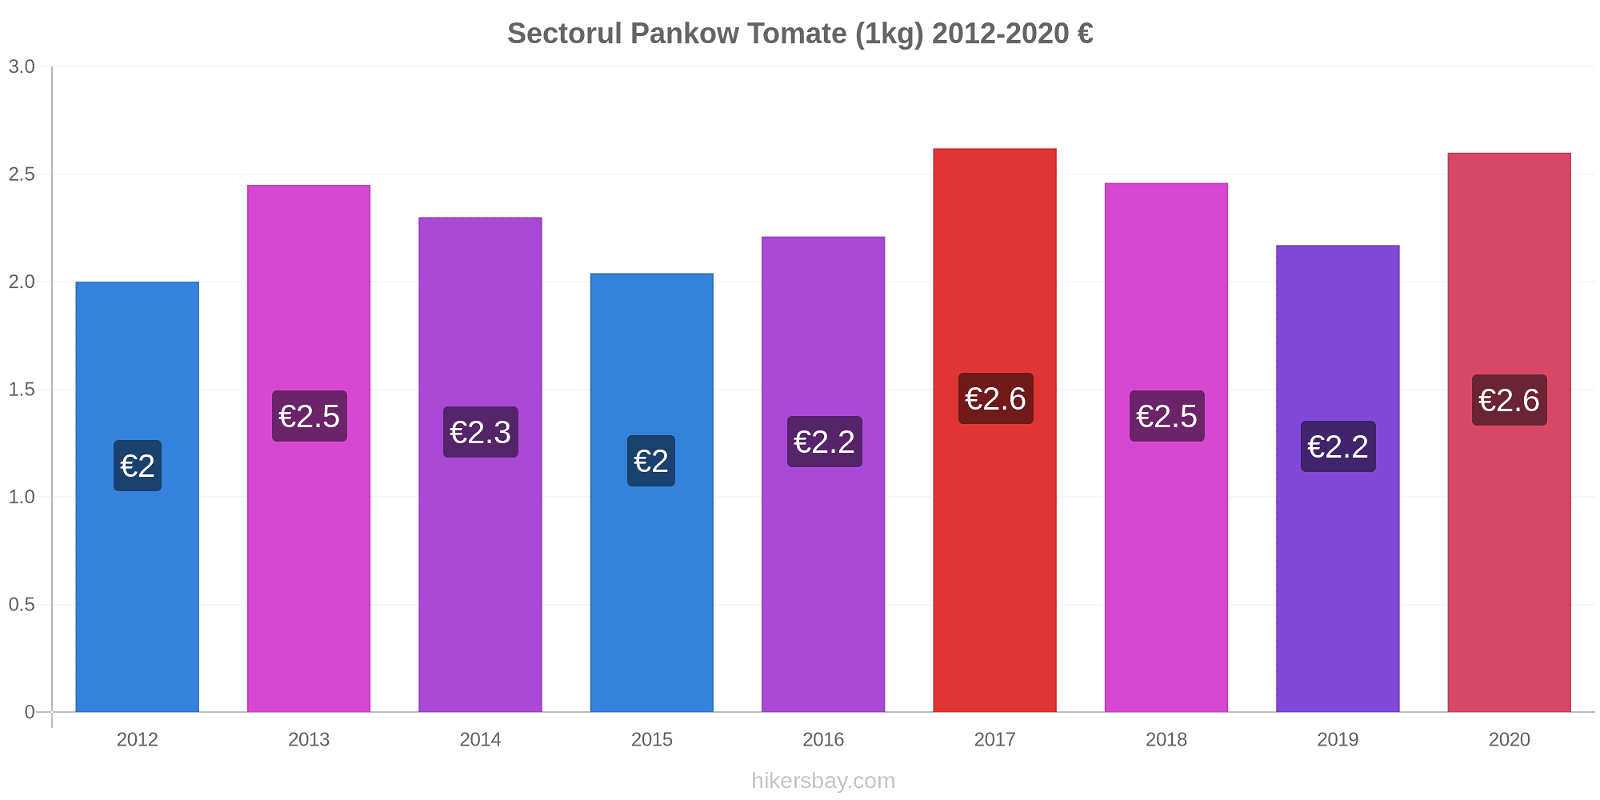 Sectorul Pankow modificări de preț Tomate (1kg) hikersbay.com